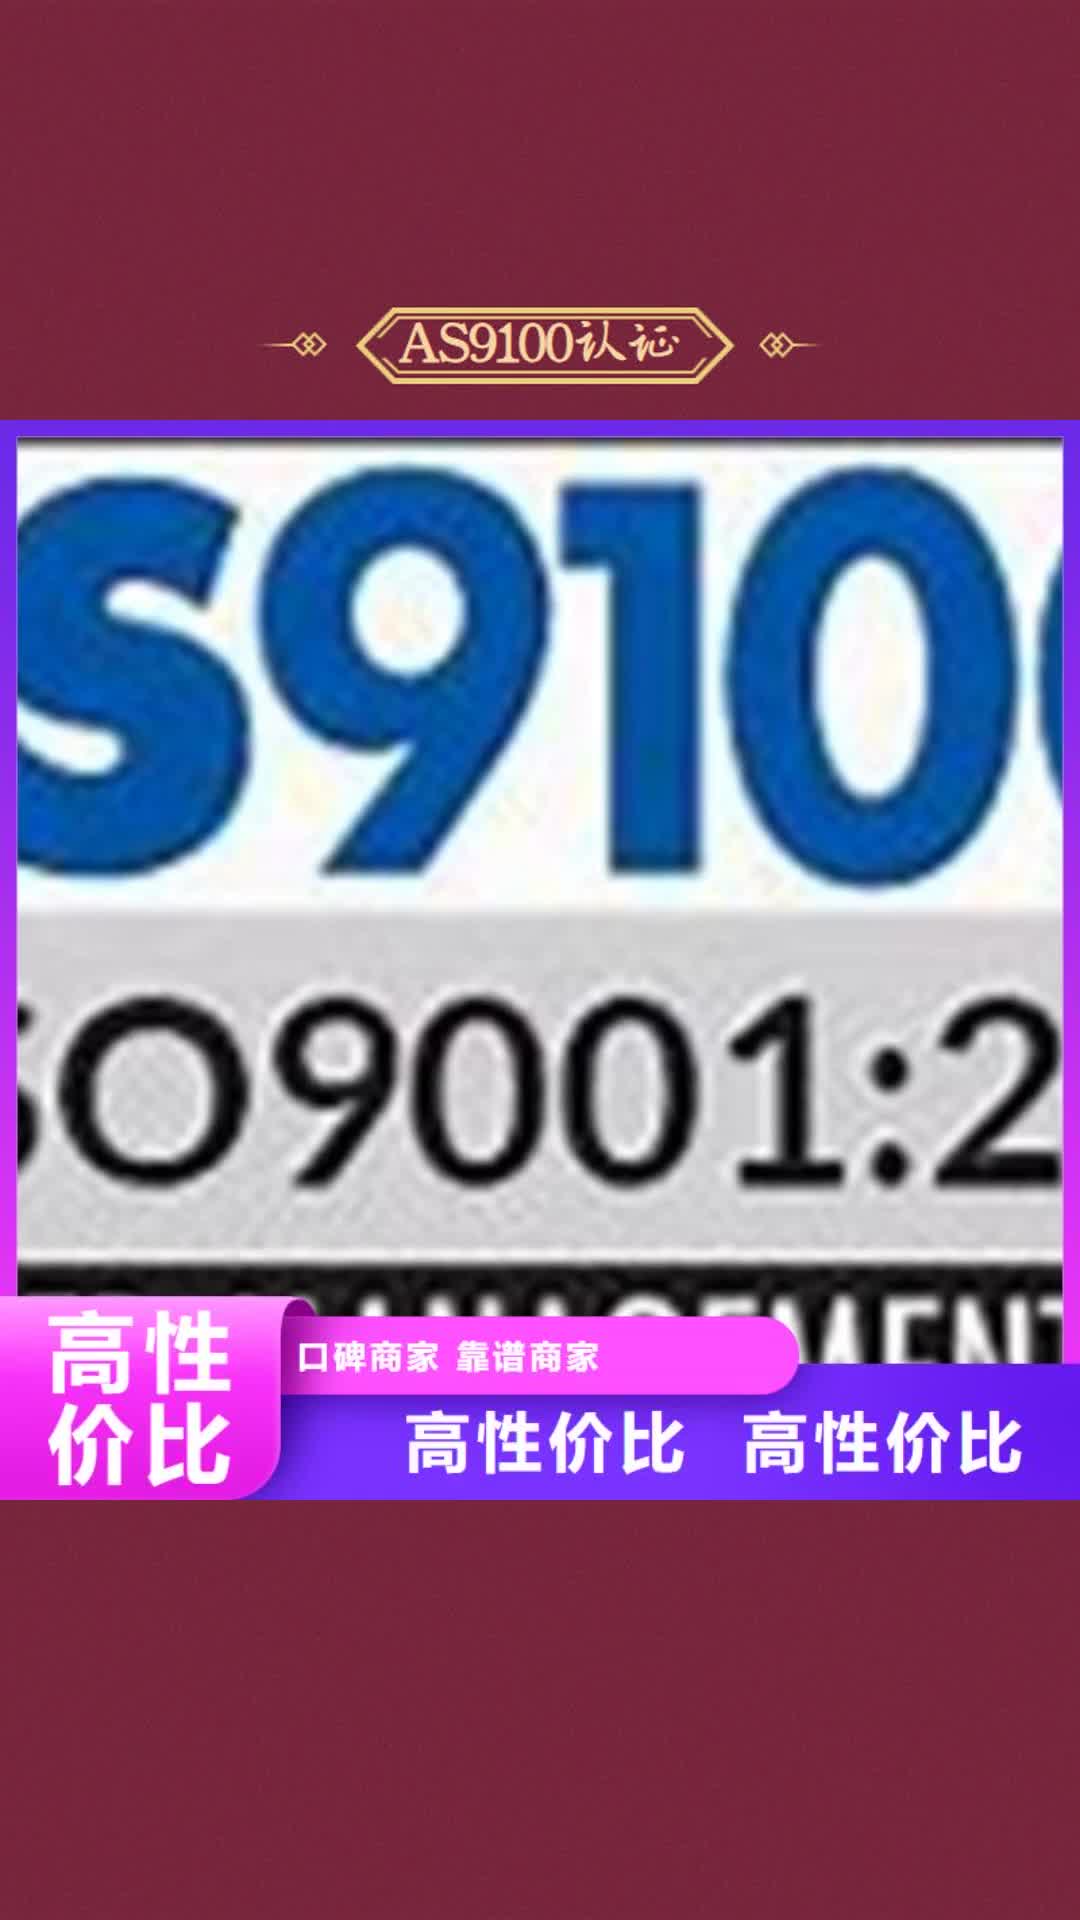 靖江【AS9100认证】-ISO10012认证服务热情